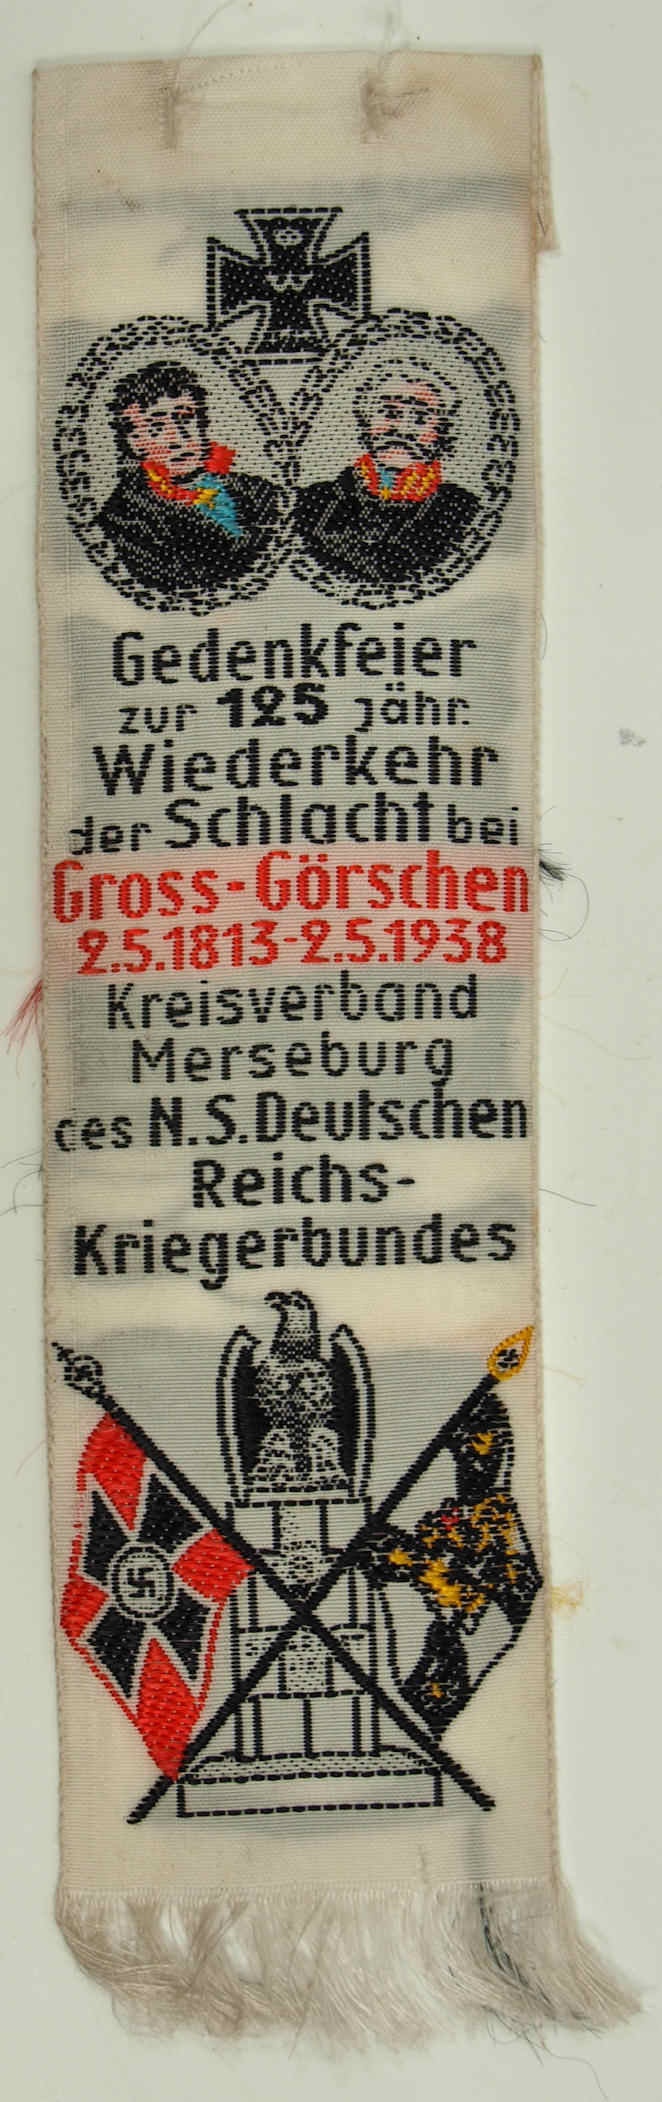 Vivatband zur 125 jähr. Wiederkehr der Schlacht bei Gross-Görschen, 2. Mai 1938 (Museum Weißenfels - Schloss Neu-Augustusburg CC BY-NC-SA)